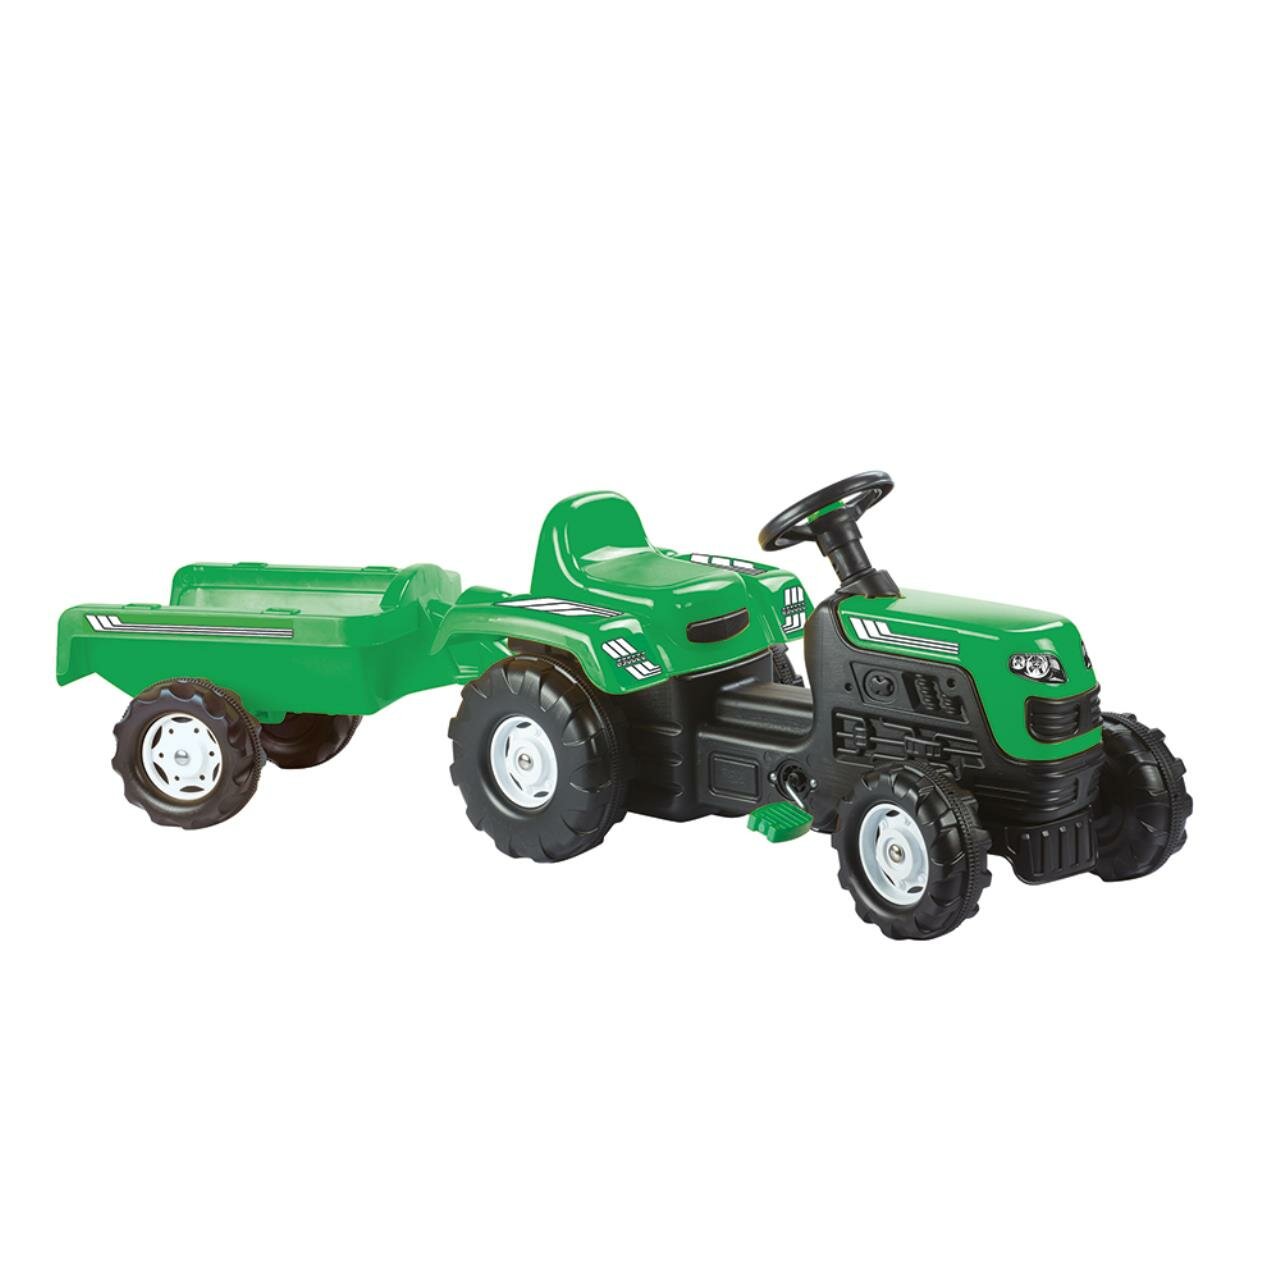 8246 Трактор педальный DOLU Ranchero с прицепом, клаксон, зеленый